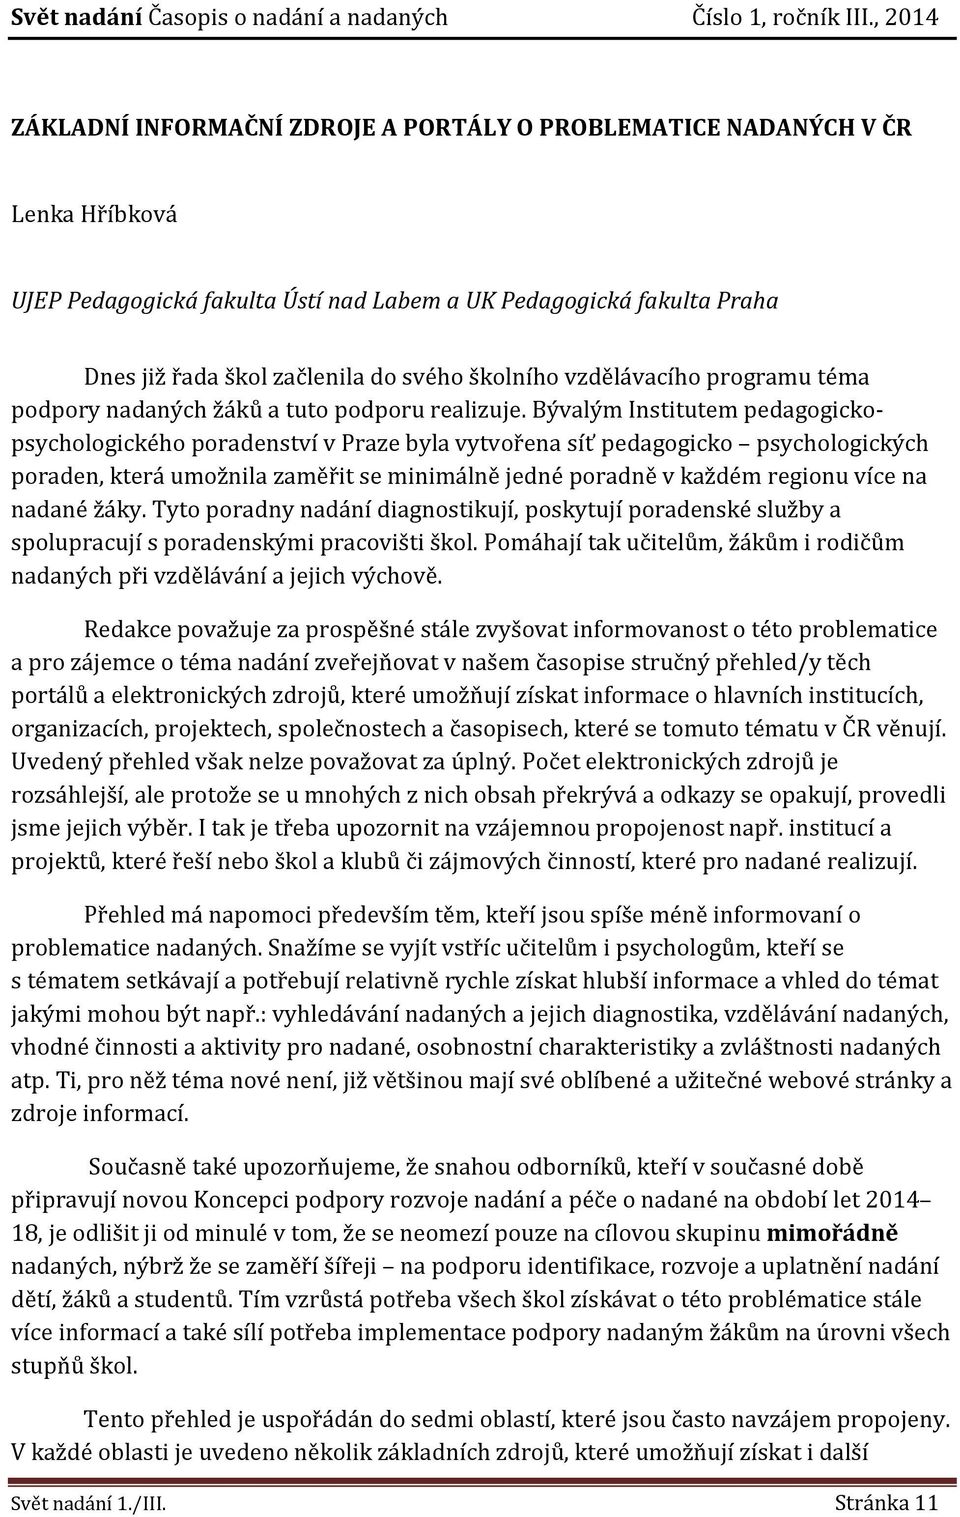 Bývalým Institutem pedagogickopsychologického poradenství v Praze byla vytvořena síť pedagogicko psychologických poraden, která umožnila zaměřit se minimálně jedné poradně v každém regionu více na